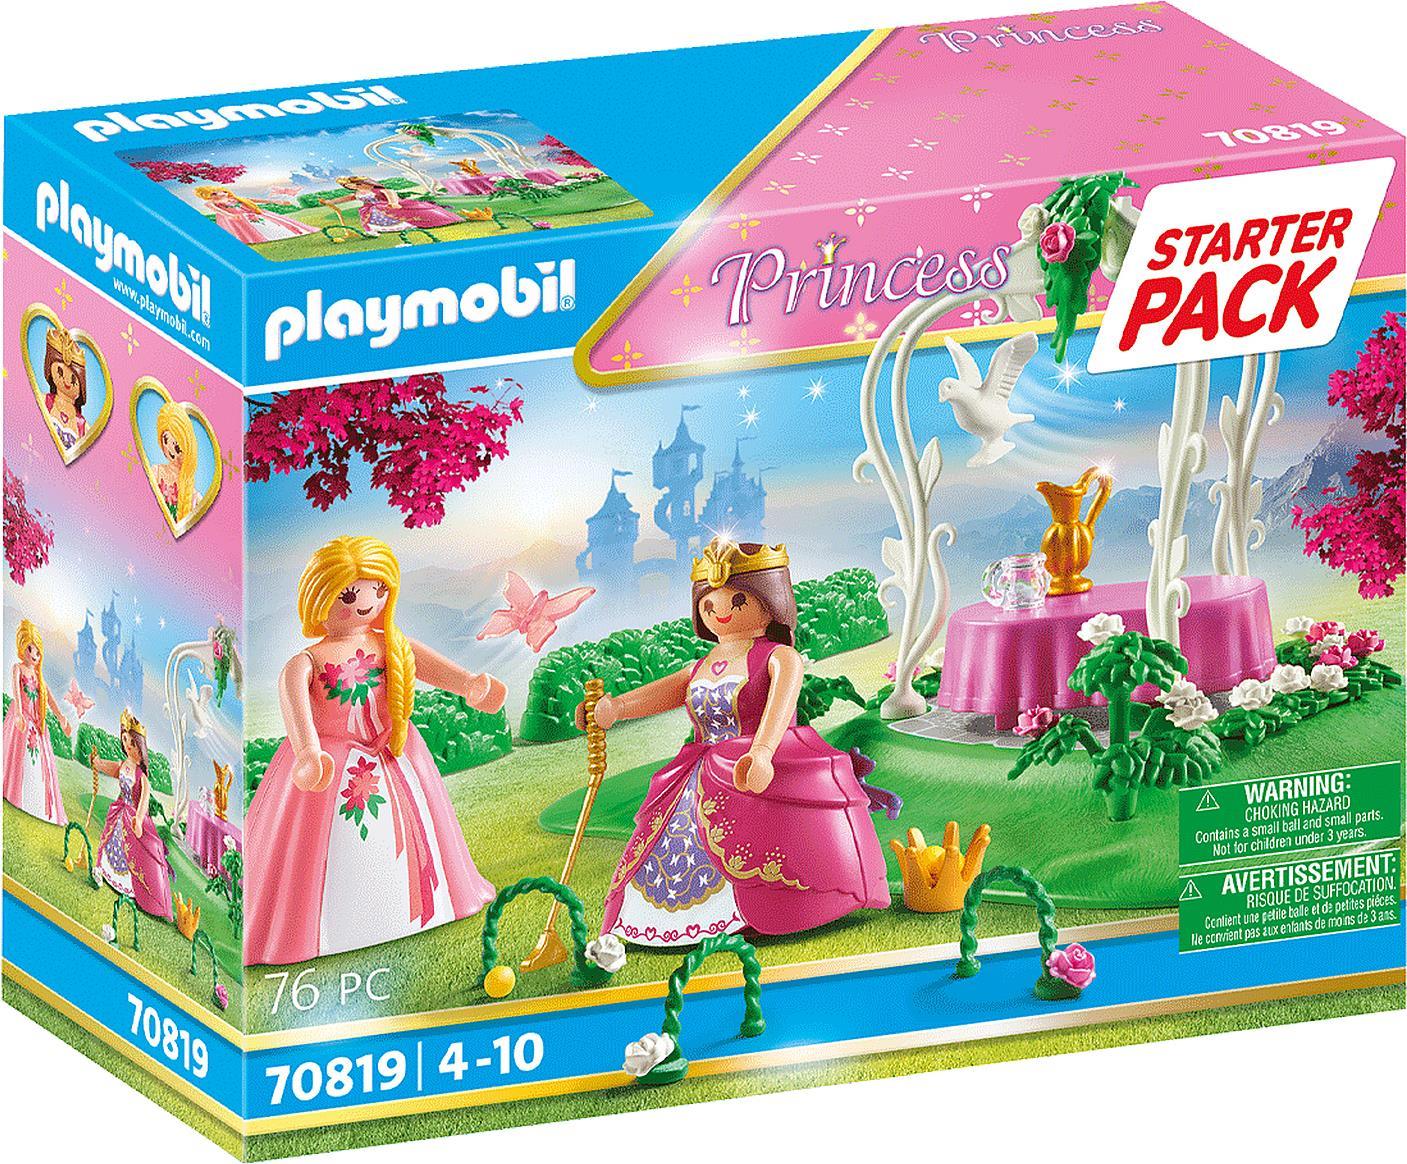 Playmobil Princess Starter Pack Prinzessinnengarten